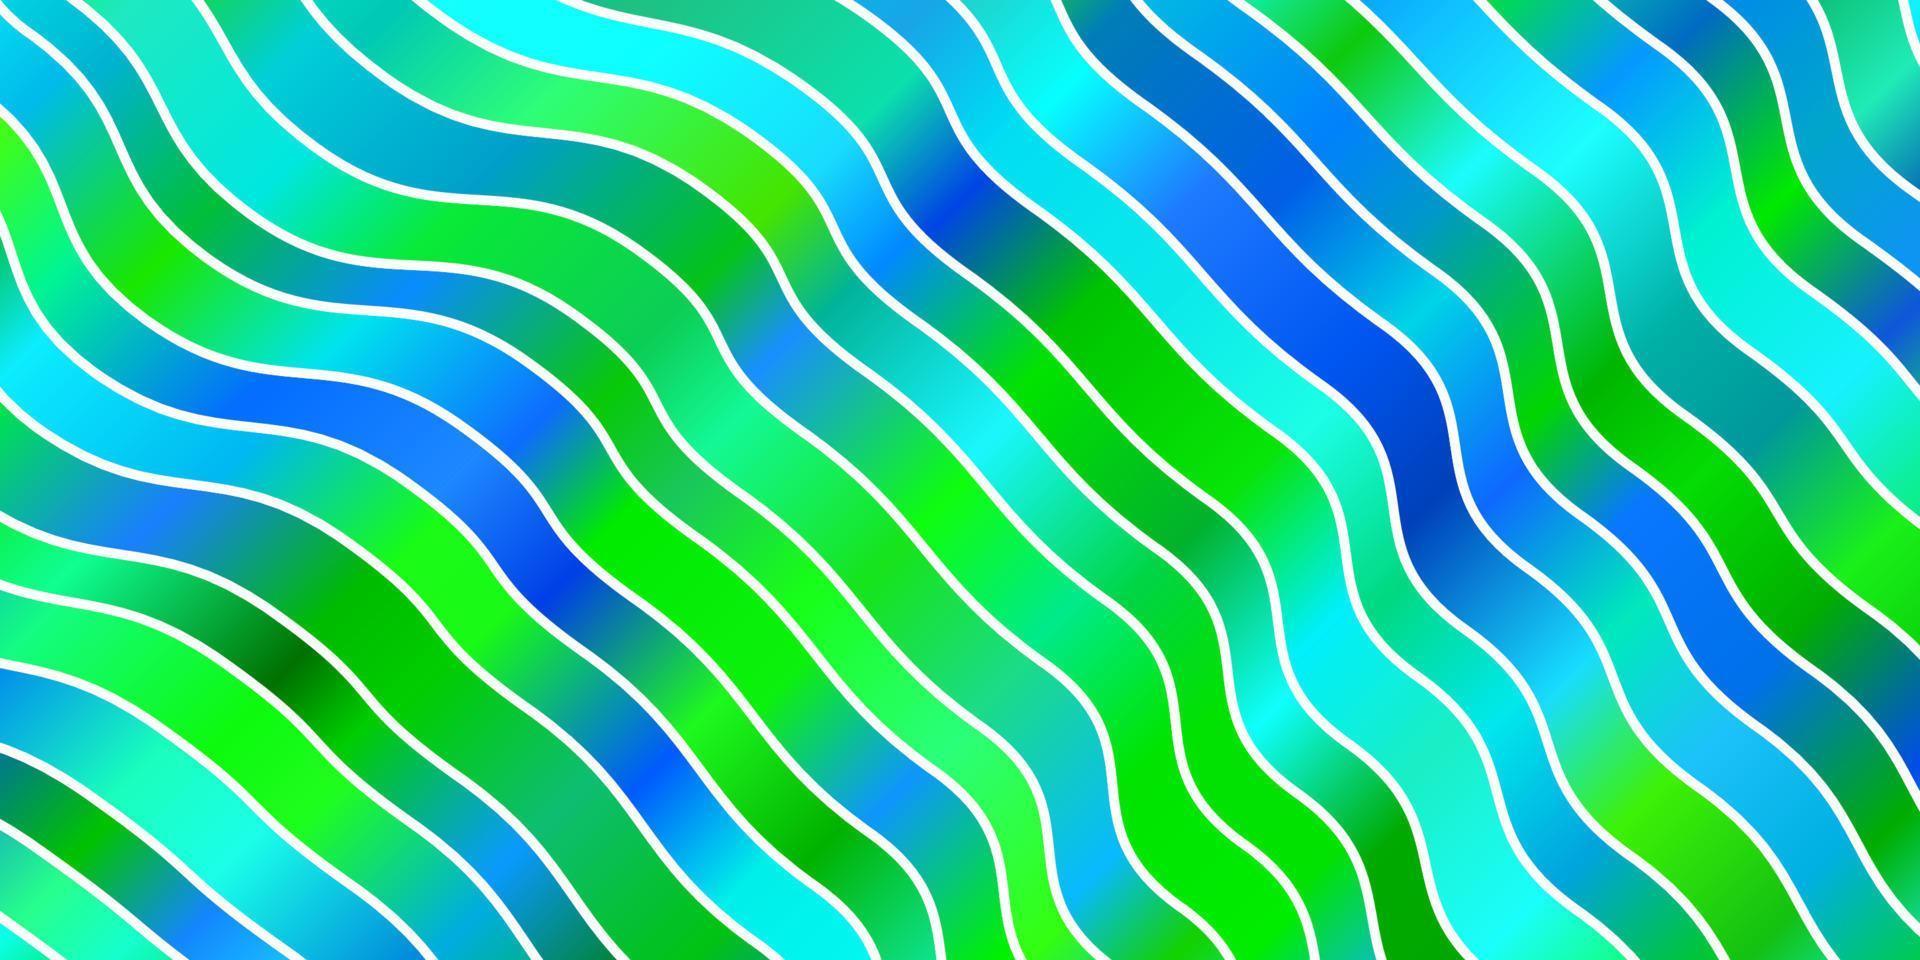 fundo vector azul e verde claro com linhas curvas.